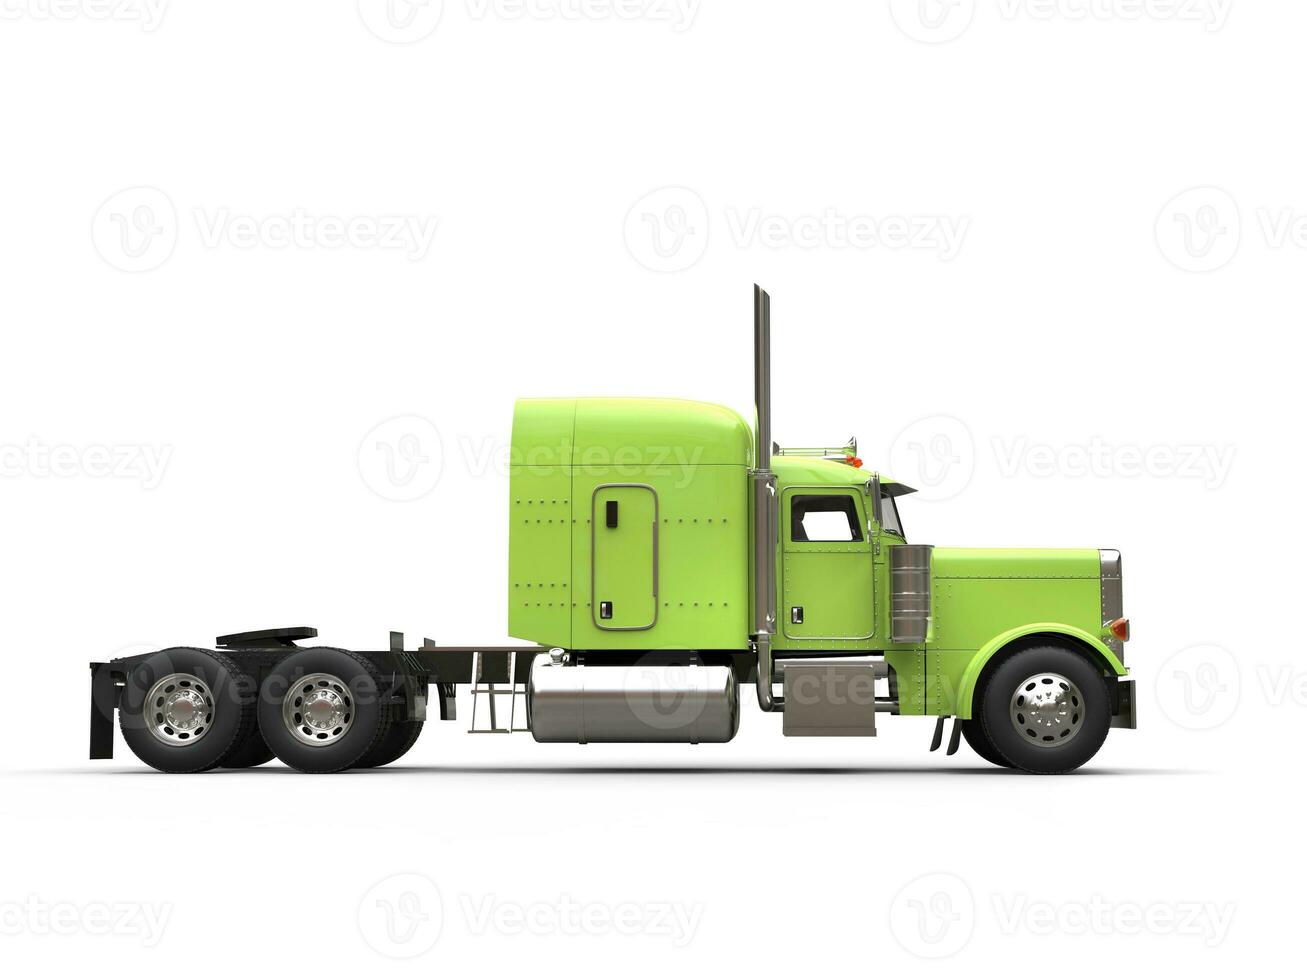 verde 18 veículo com rodas caminhão - não reboque - lado Visão foto